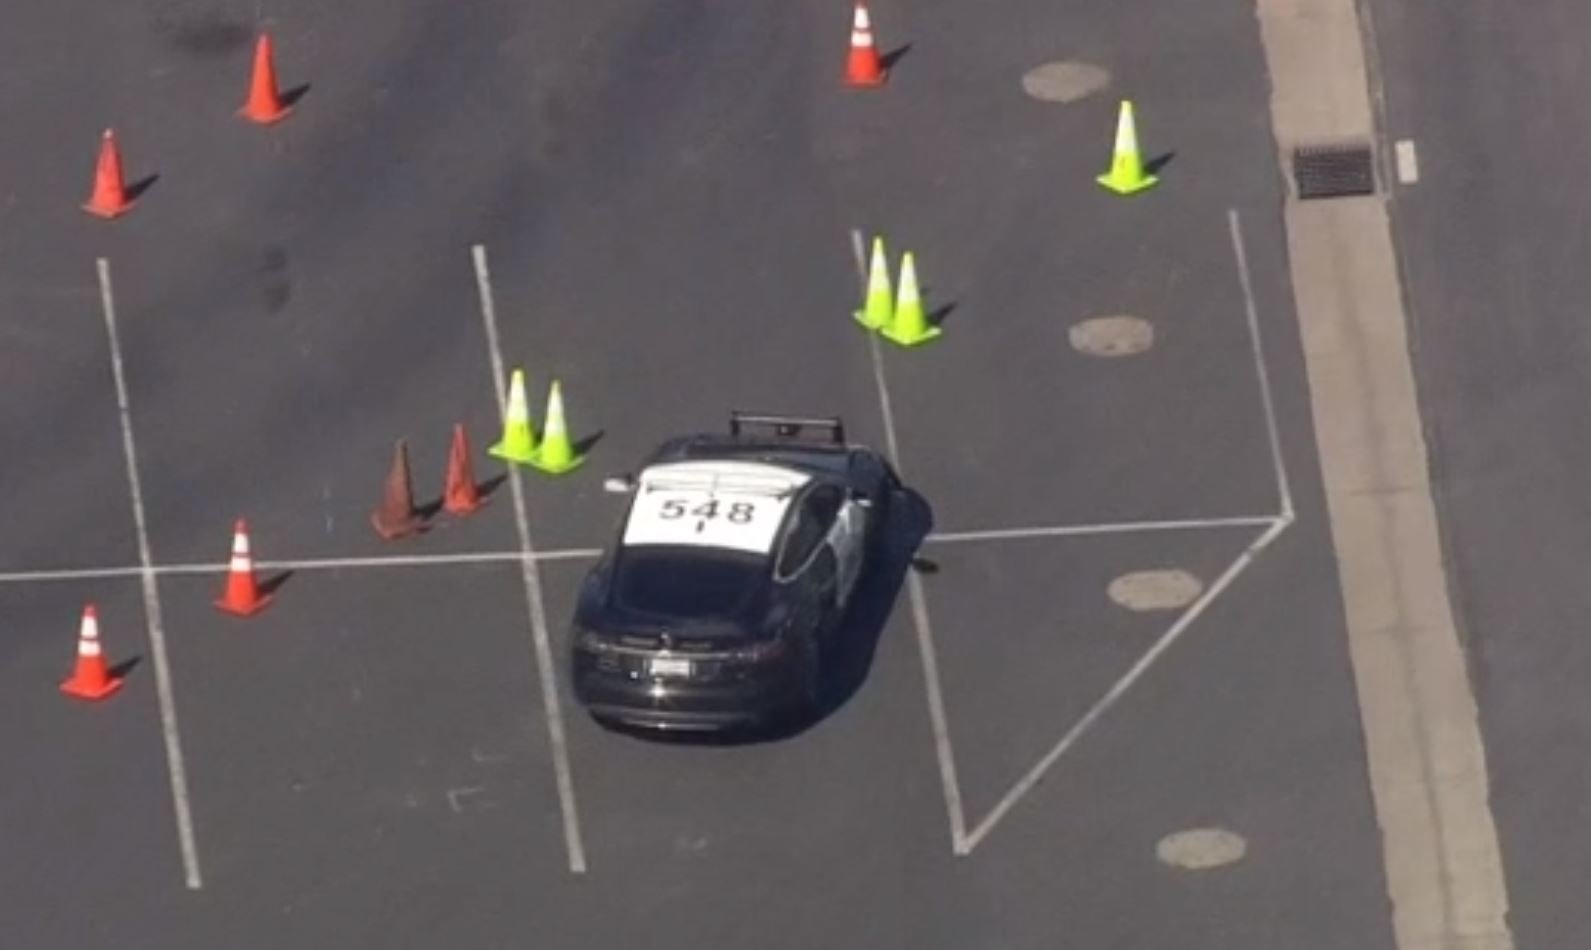 Policejní Tesla Model S během testování